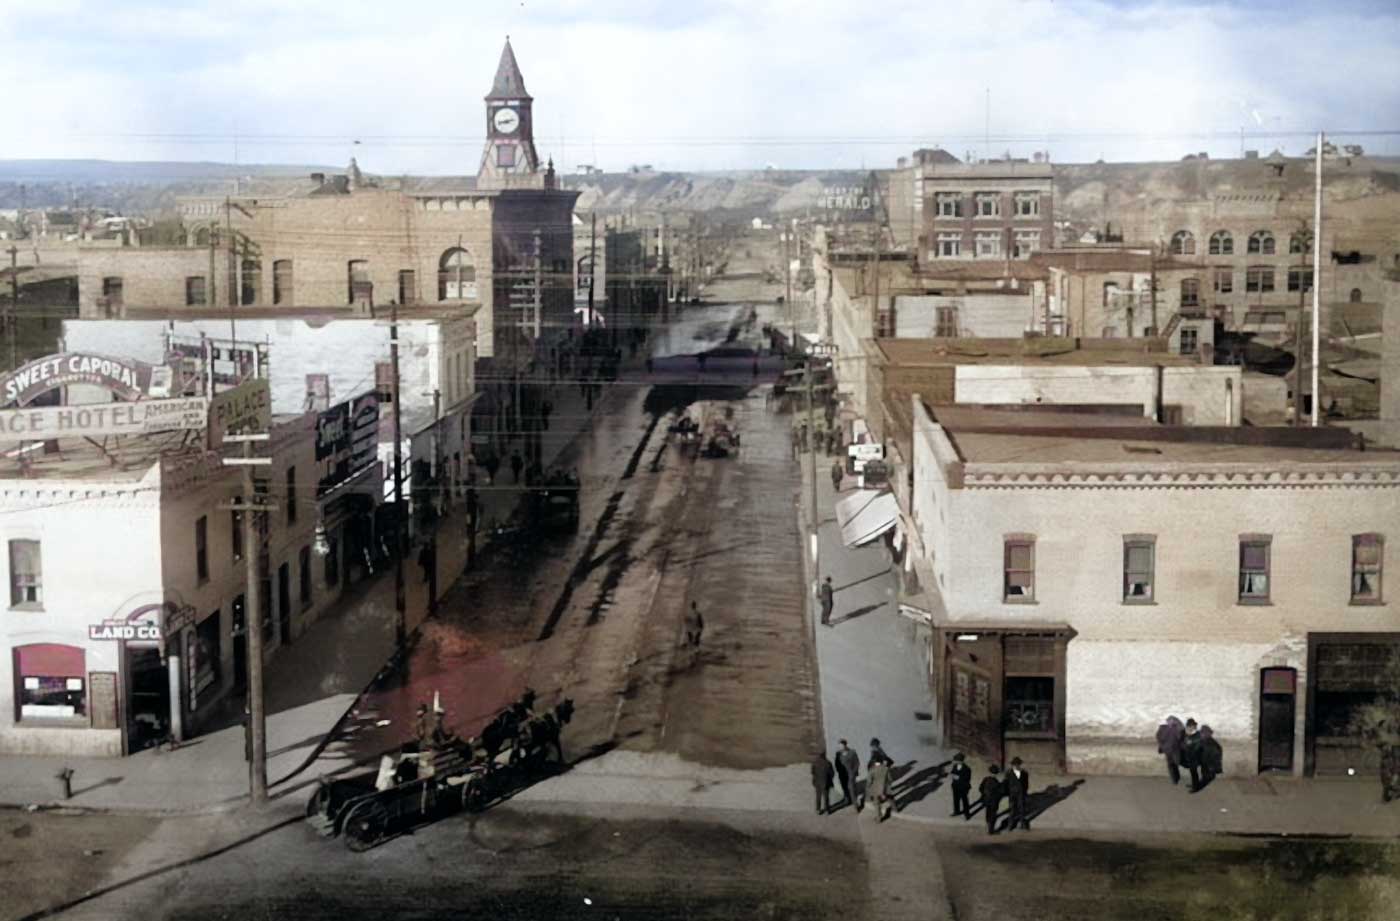 Calgary City Old Photo (1900s)